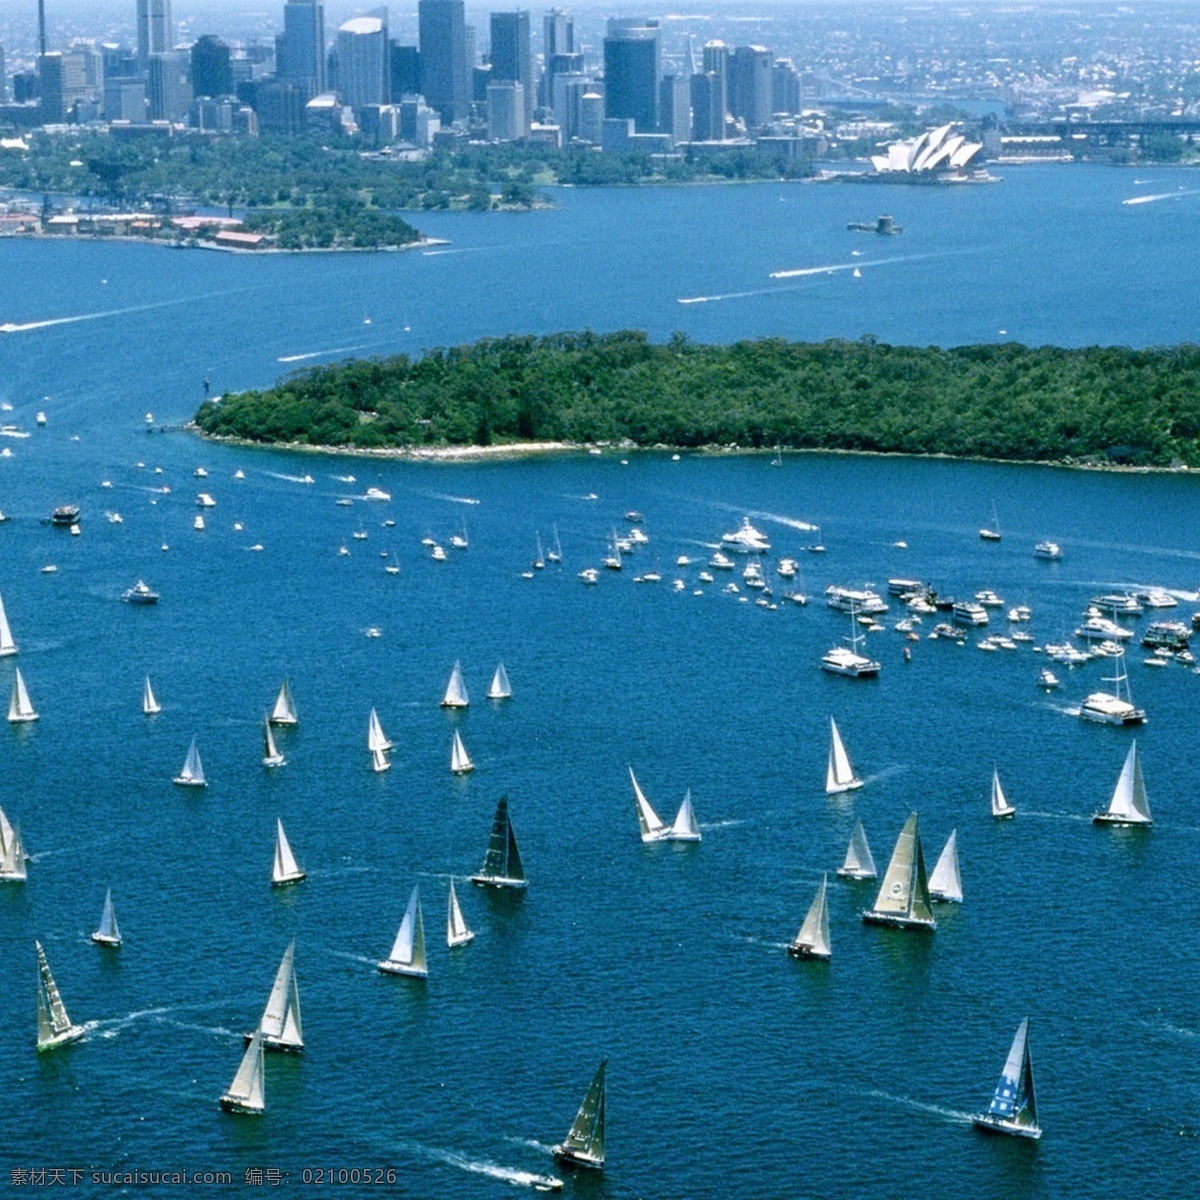 澳大利亚风景 澳大利亚 景色 城市 港口 蓝色 青色 天蓝色